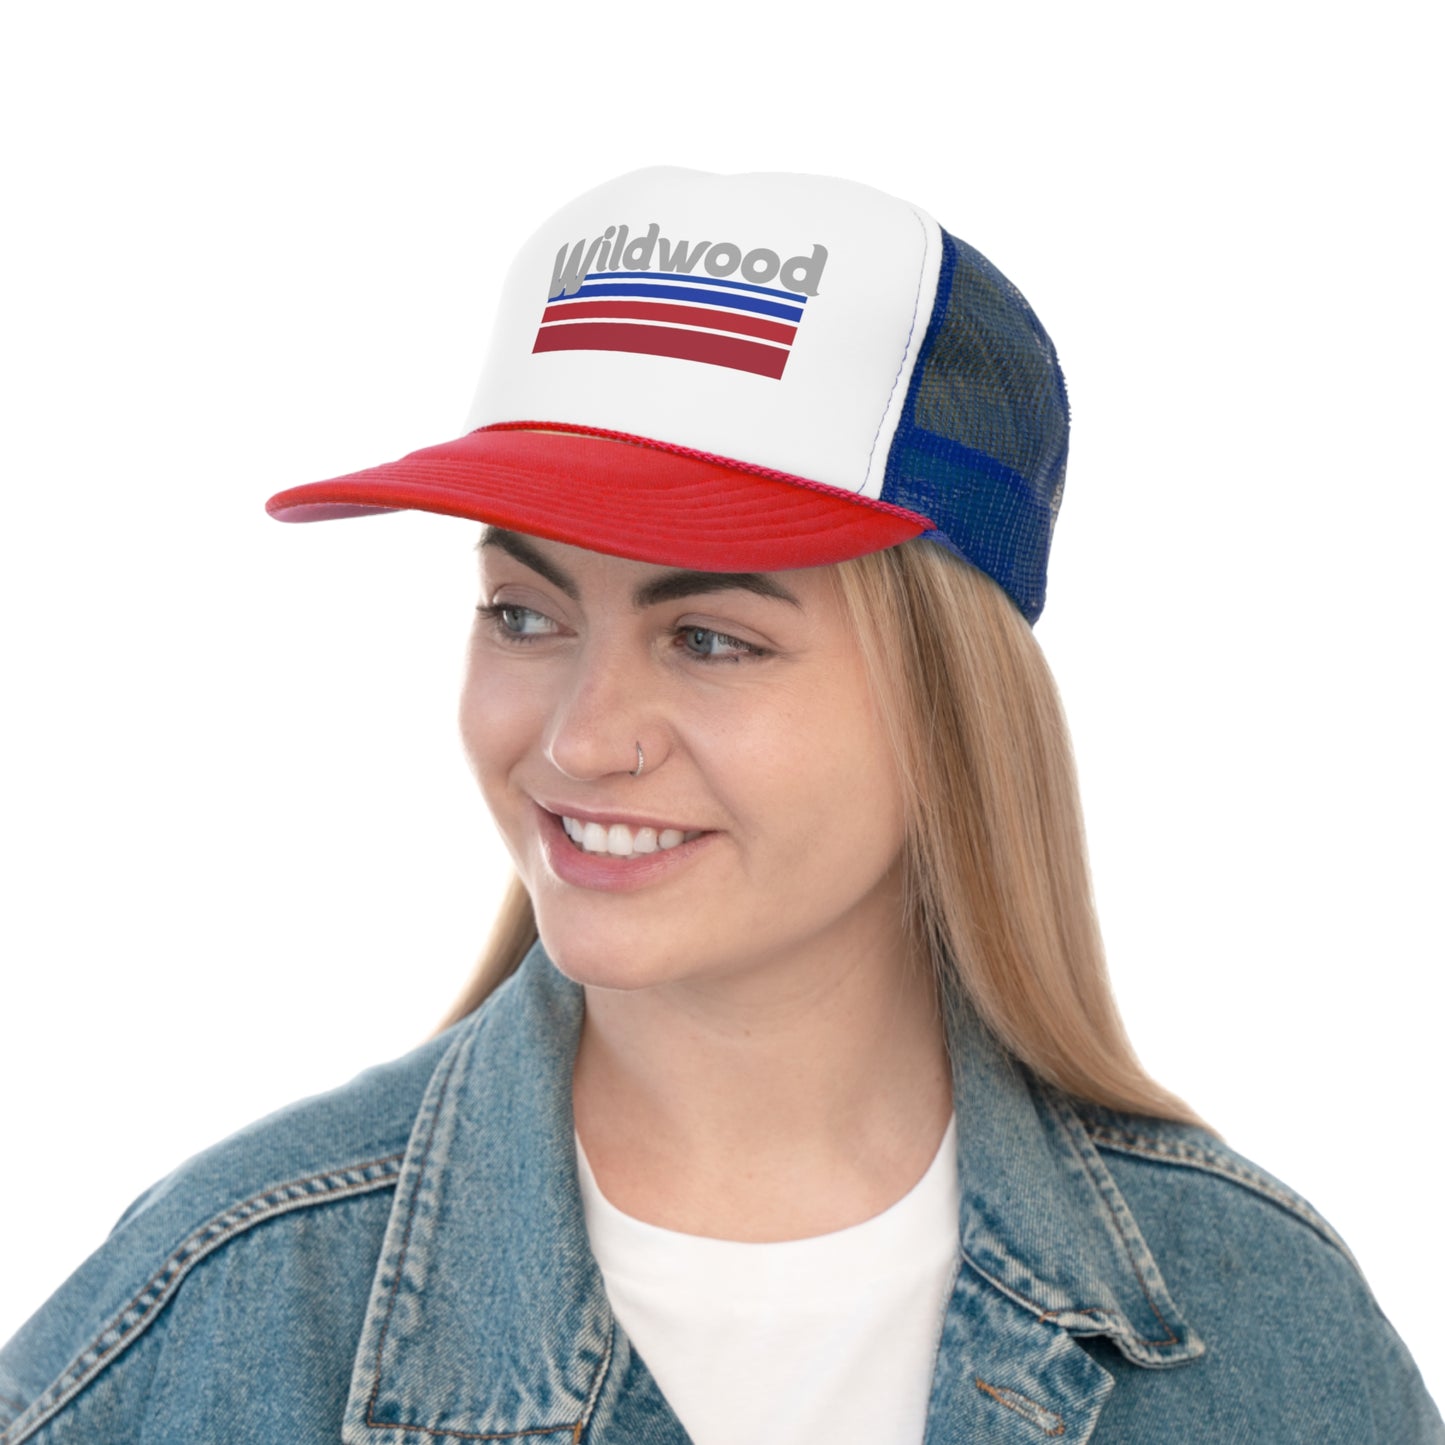 Wildwood Retro Phillies Font Hat Trucker Caps